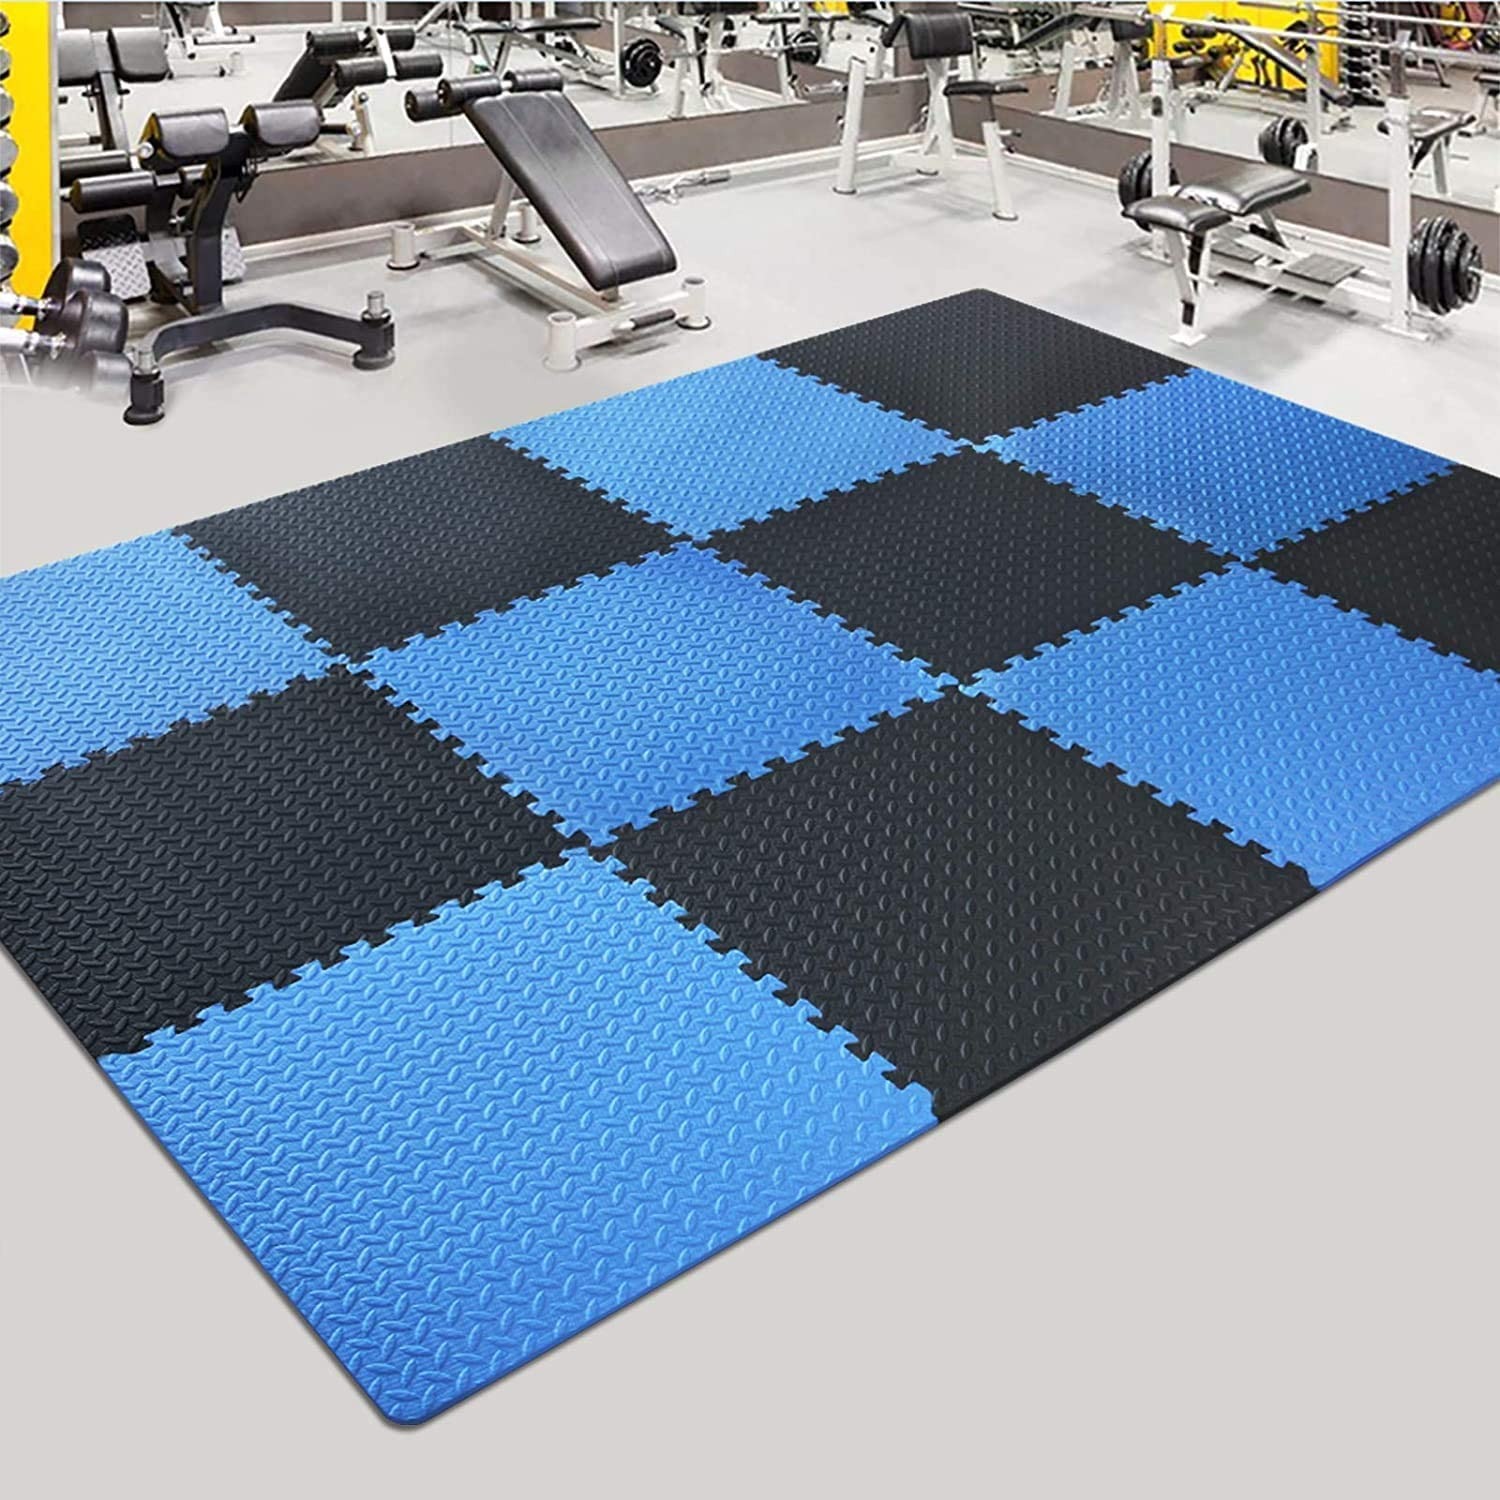 EVA foam mats for gym